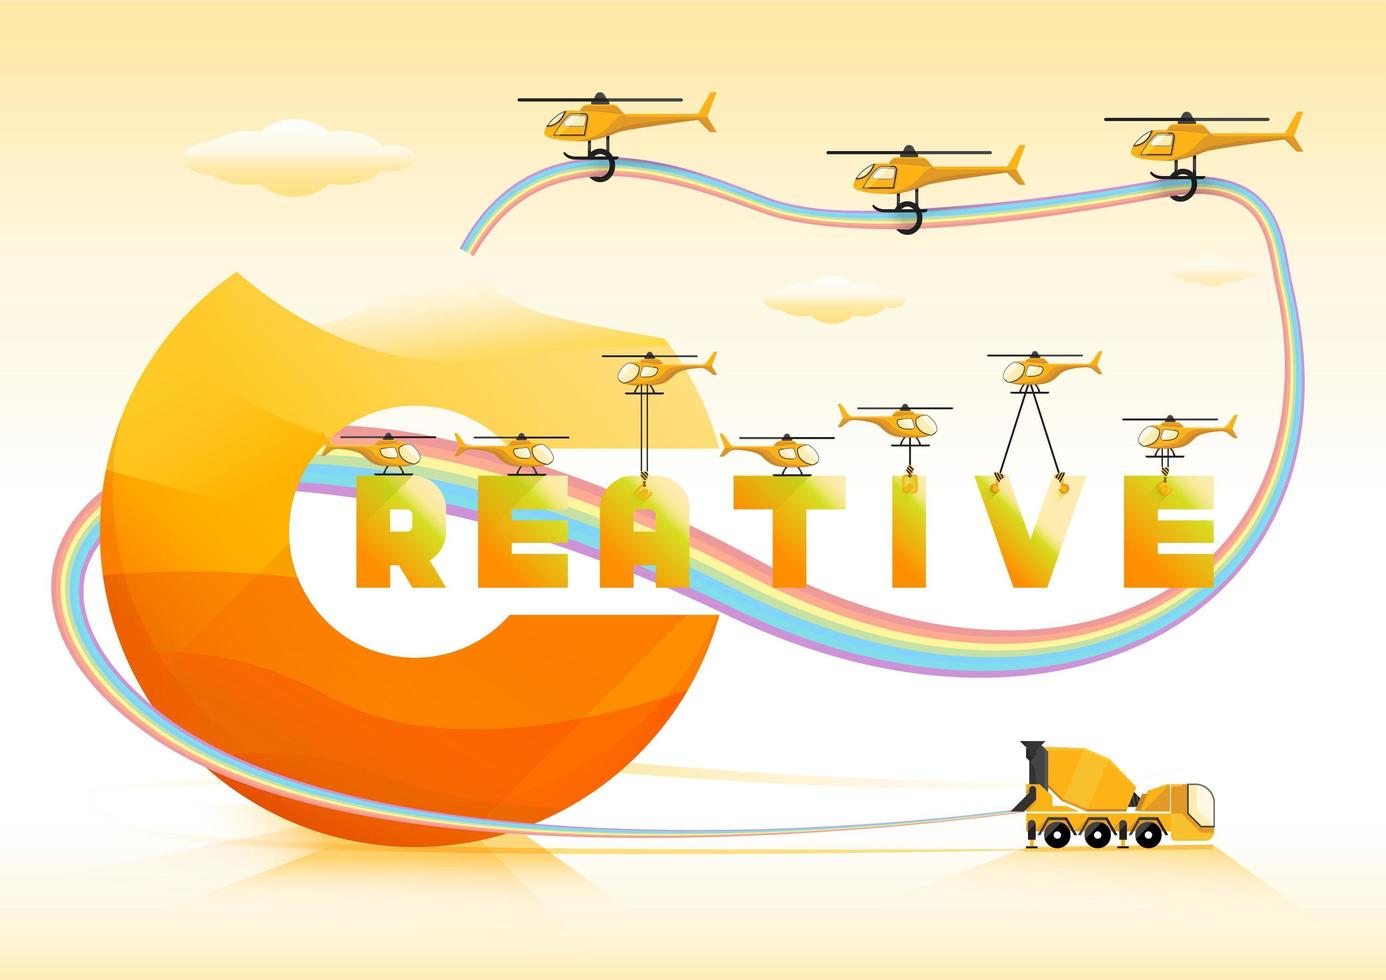 Creatieve tekst met regenboogbuis, cementvrachtwagen en het vliegen met gele helikopters vector